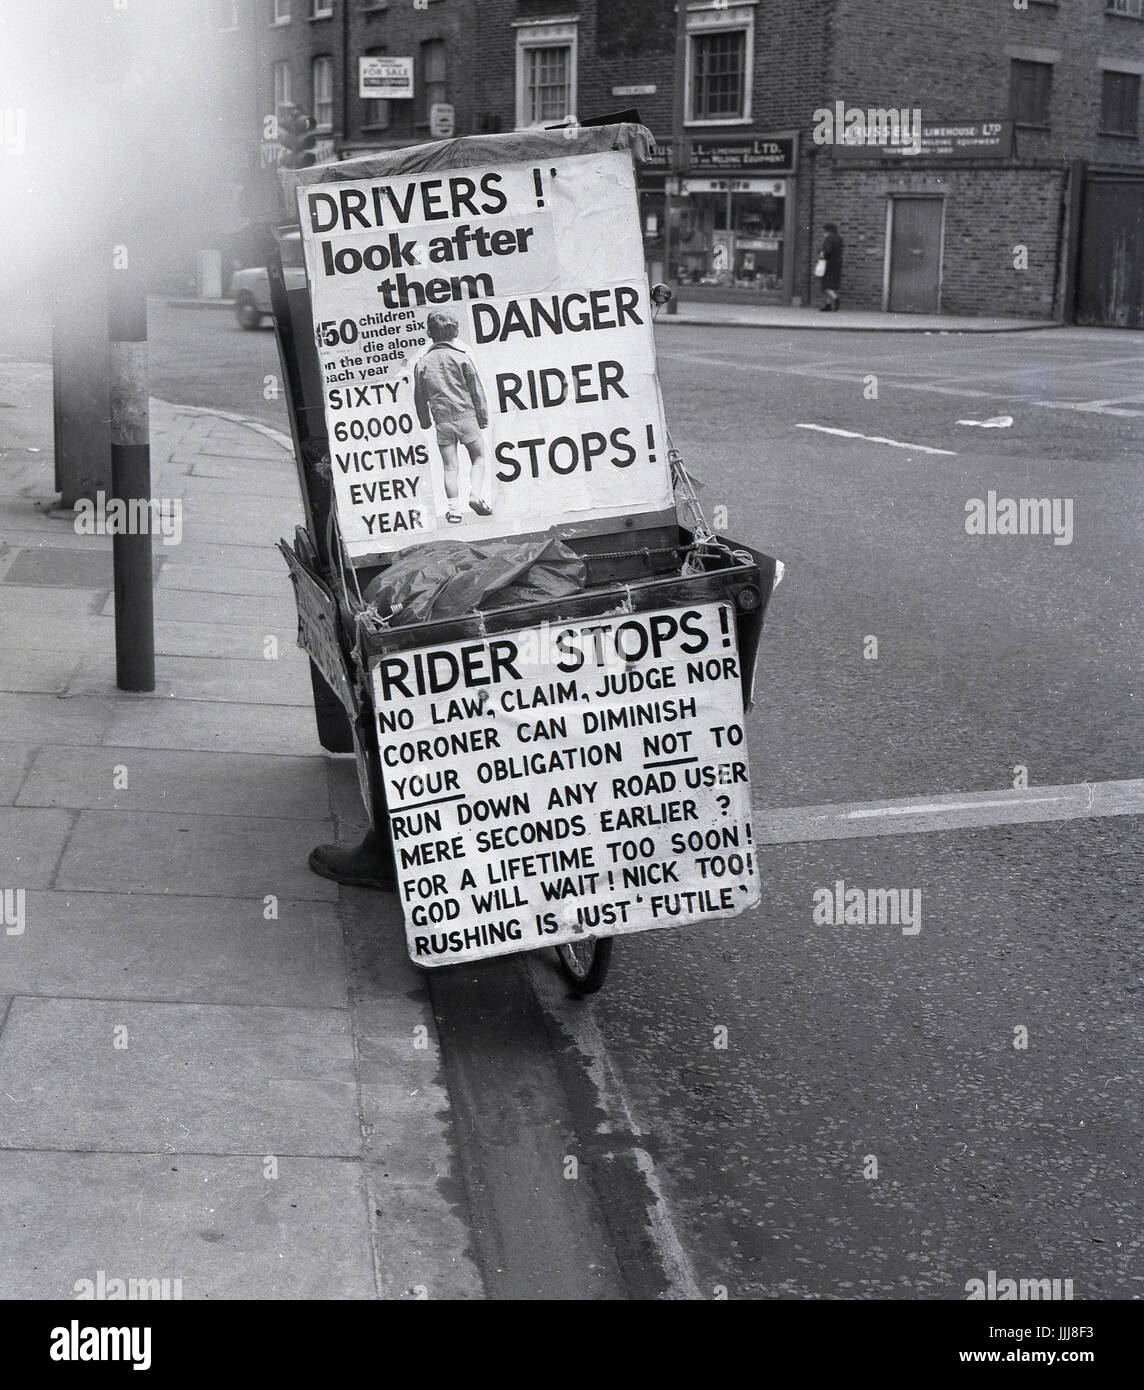 1971, Greenwich High Road, London, Bild zeigt die exzentrische Engländer und glühender politische Kandidaten Lt. Com William (Bill) Boaks auf seine "Kampagnenbus", ein Fahrrad mit Plakaten und Schildern über Sicherheit im Straßenverkehr, eine zentrale Ursache für seine Überzeugungen bedeckt... Stockfoto